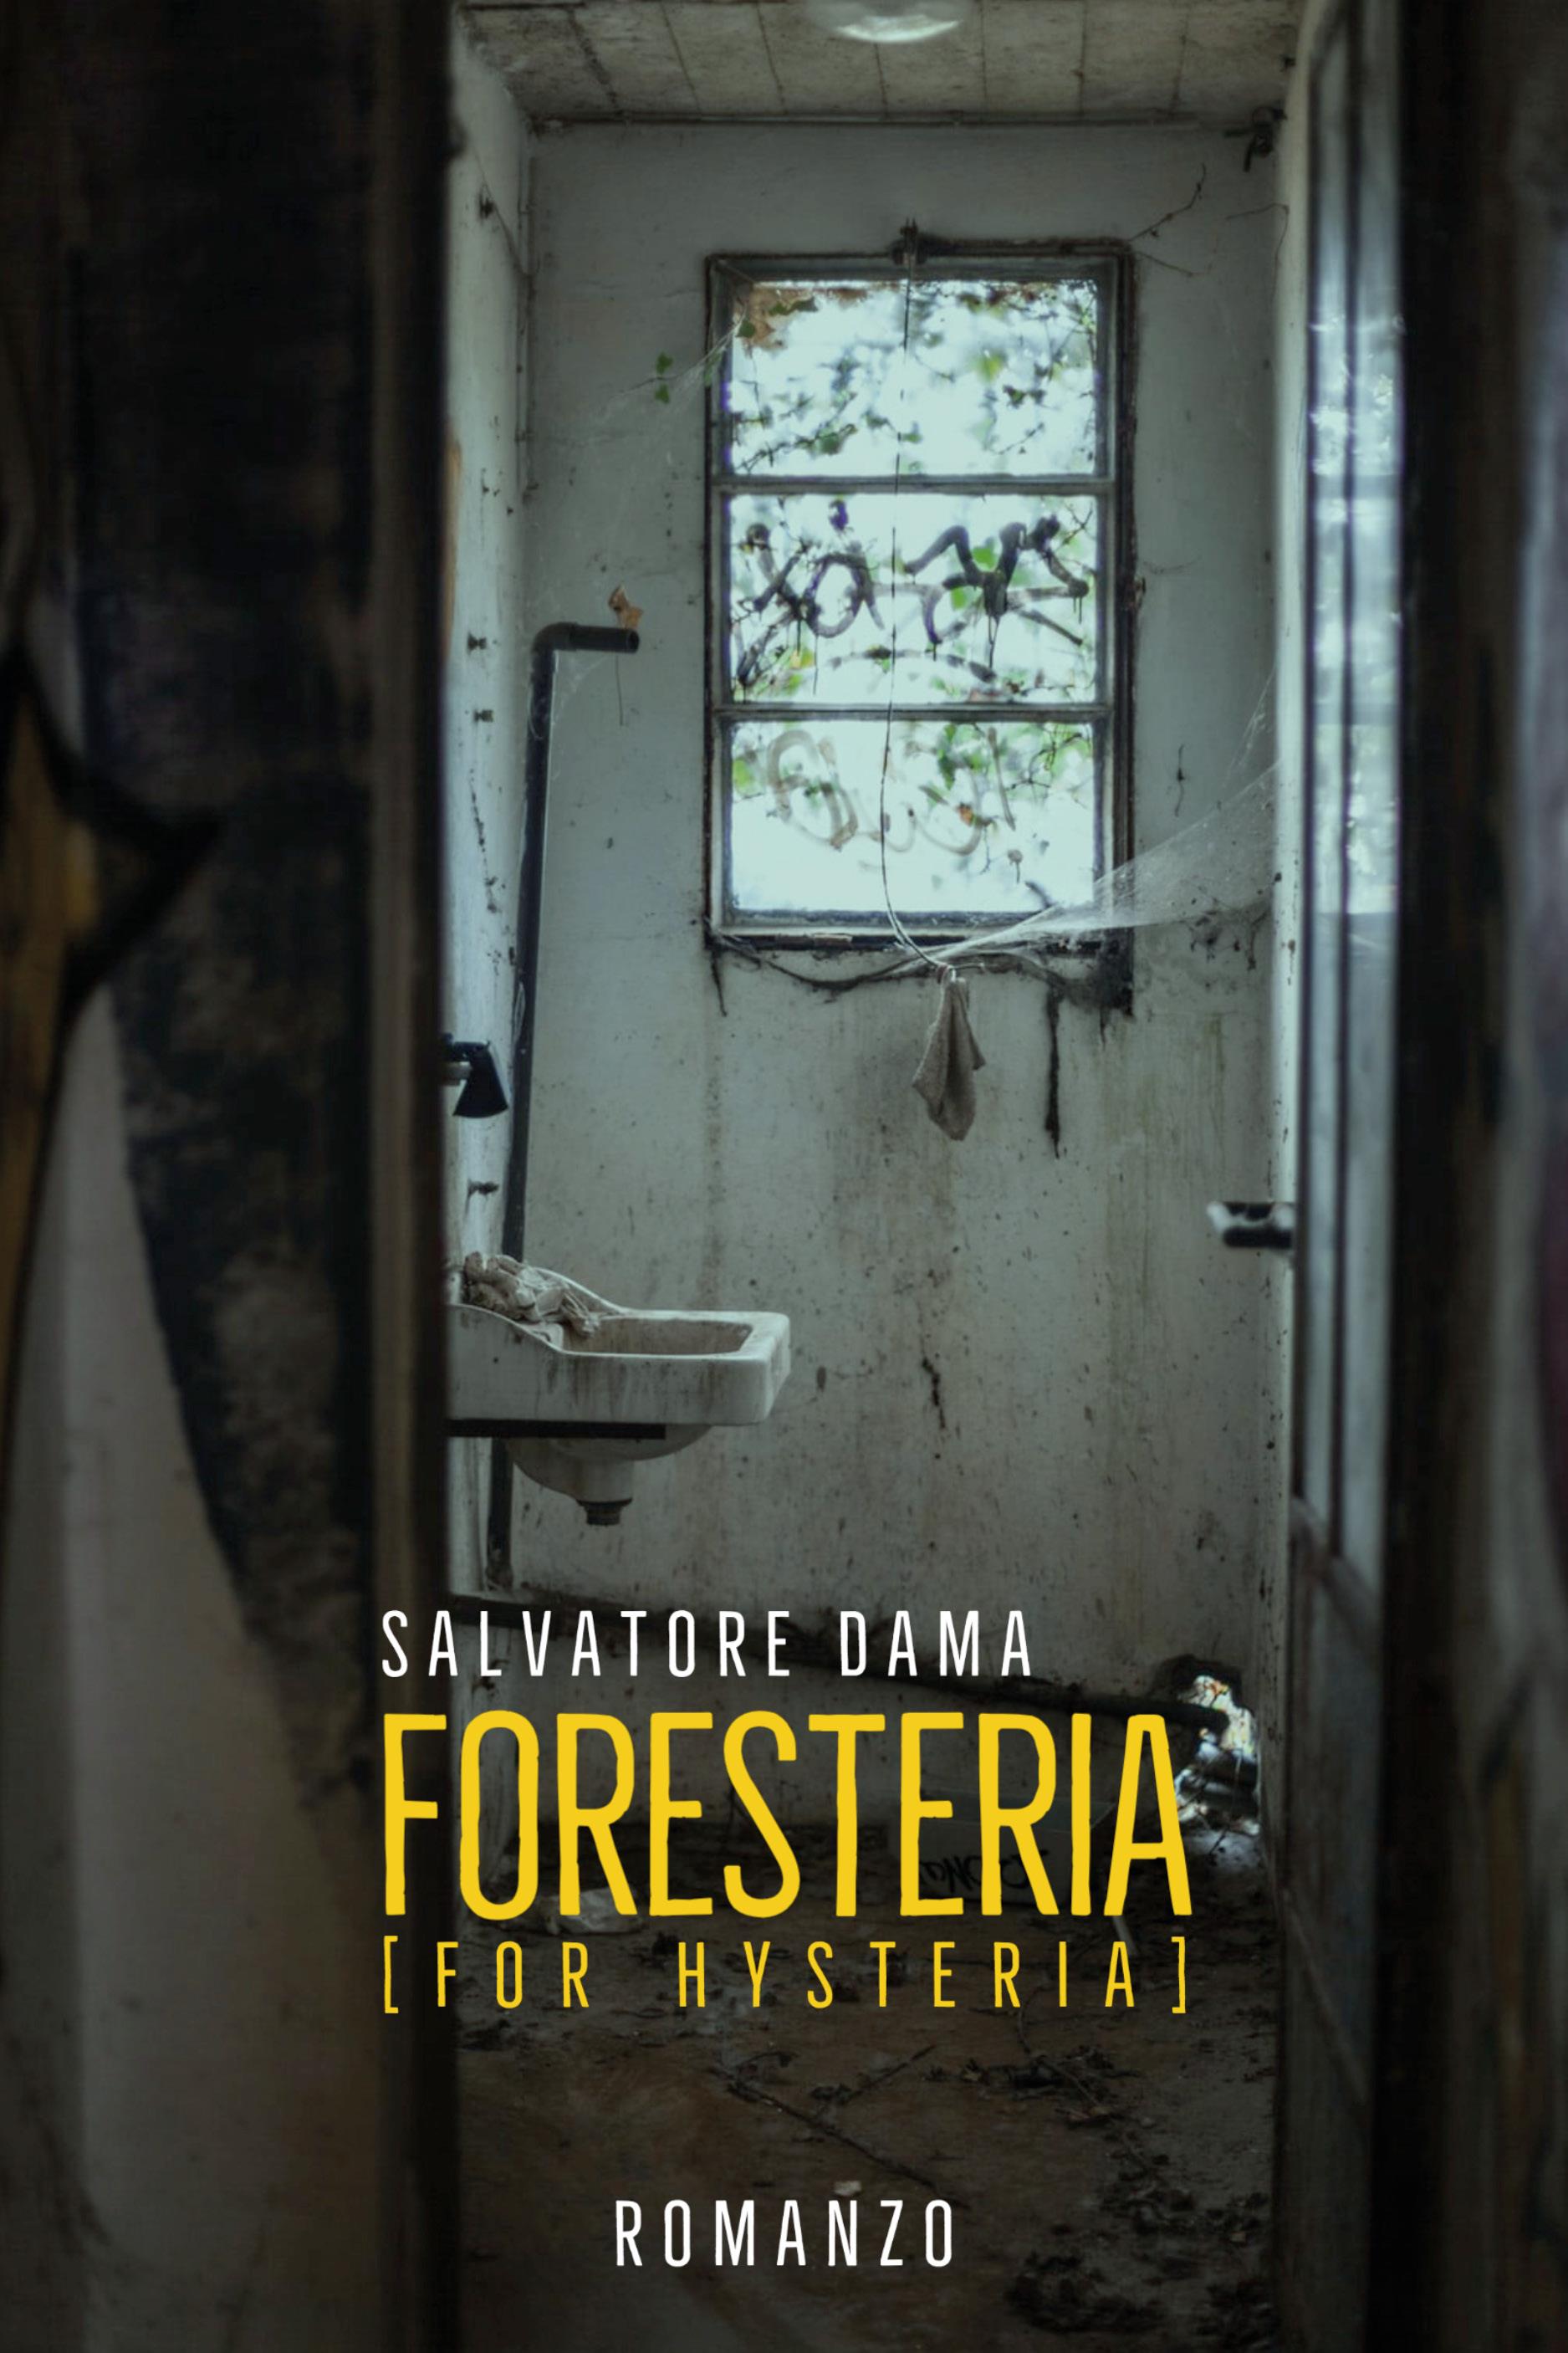 Foresteria (For Hysteria)